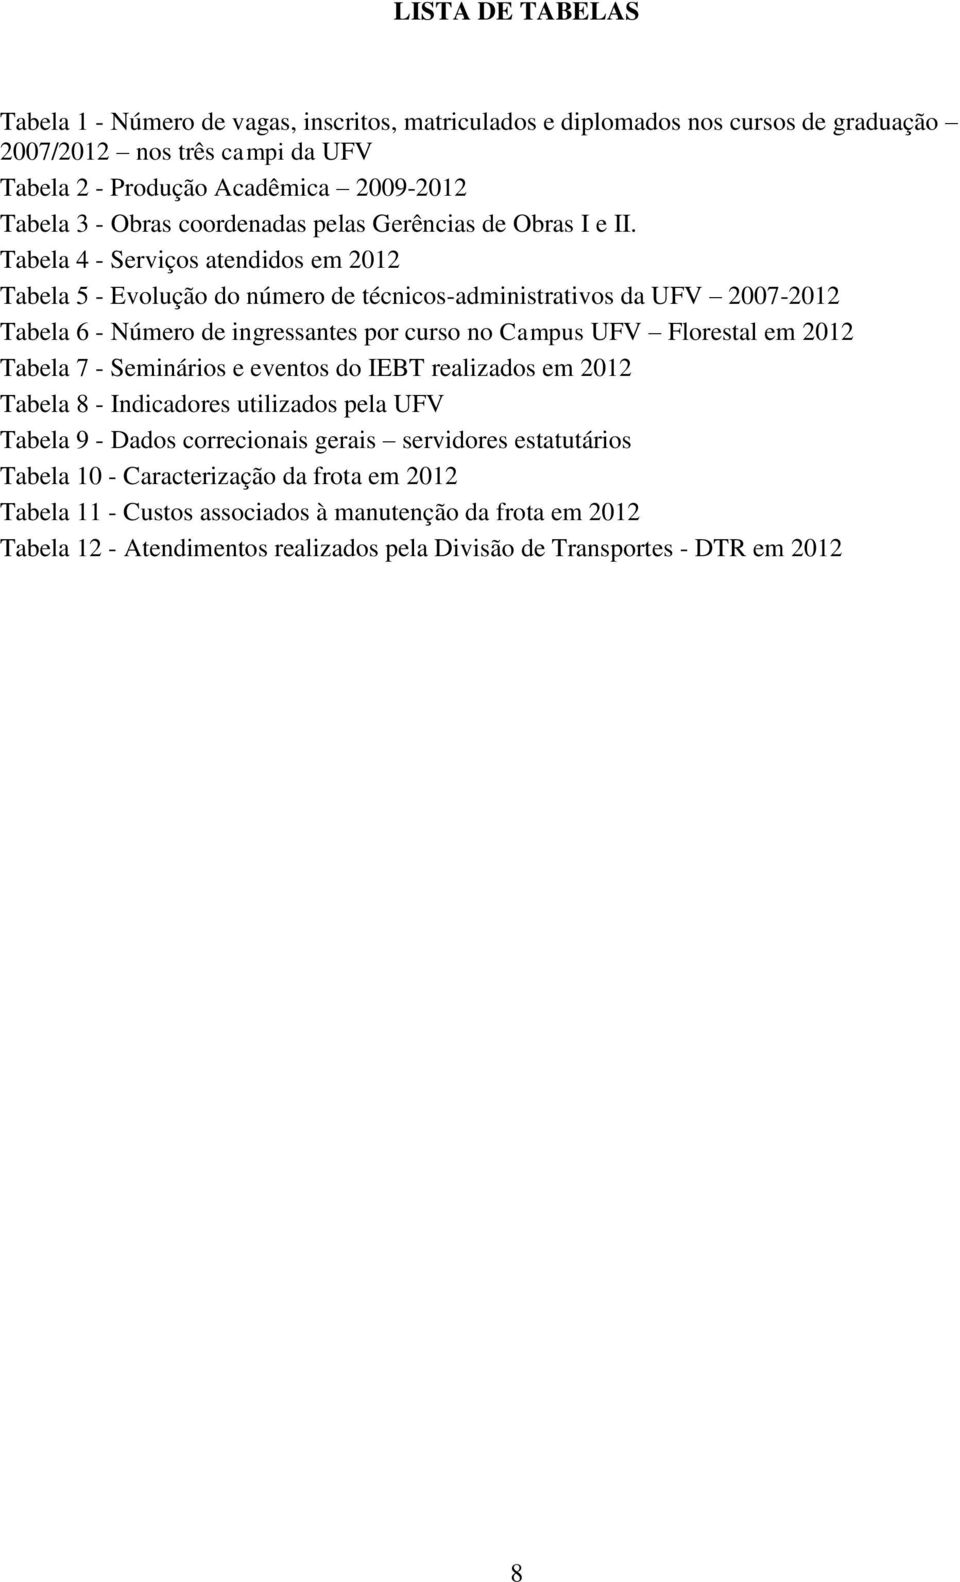 Tabela 4 - Serviços atendidos em 2012 Tabela 5 - Evolução do número de técnicos-administrativos da UFV 2007-2012 Tabela 6 - Número de ingressantes por curso no Campus UFV Florestal em 2012